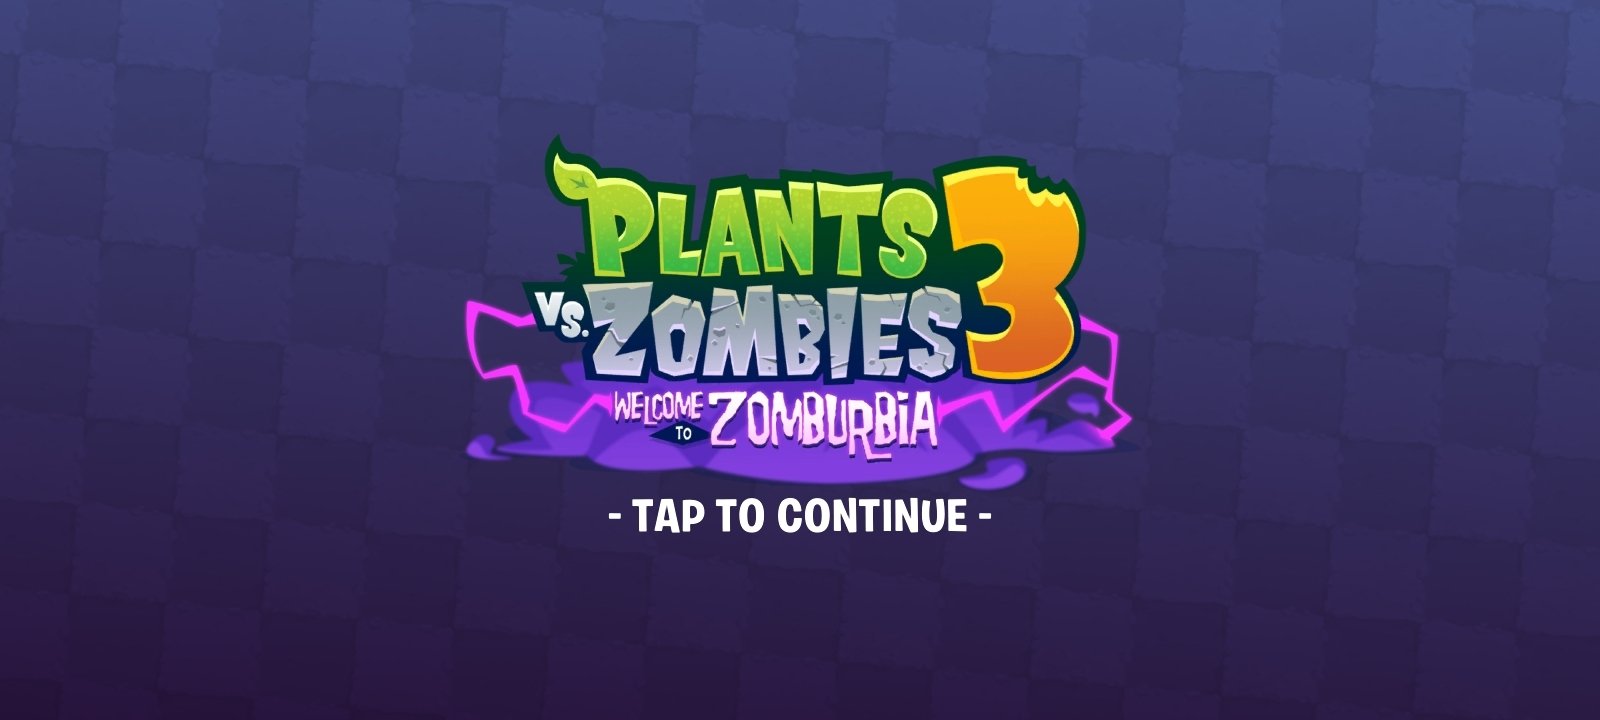 plants vs zombies 3 online download